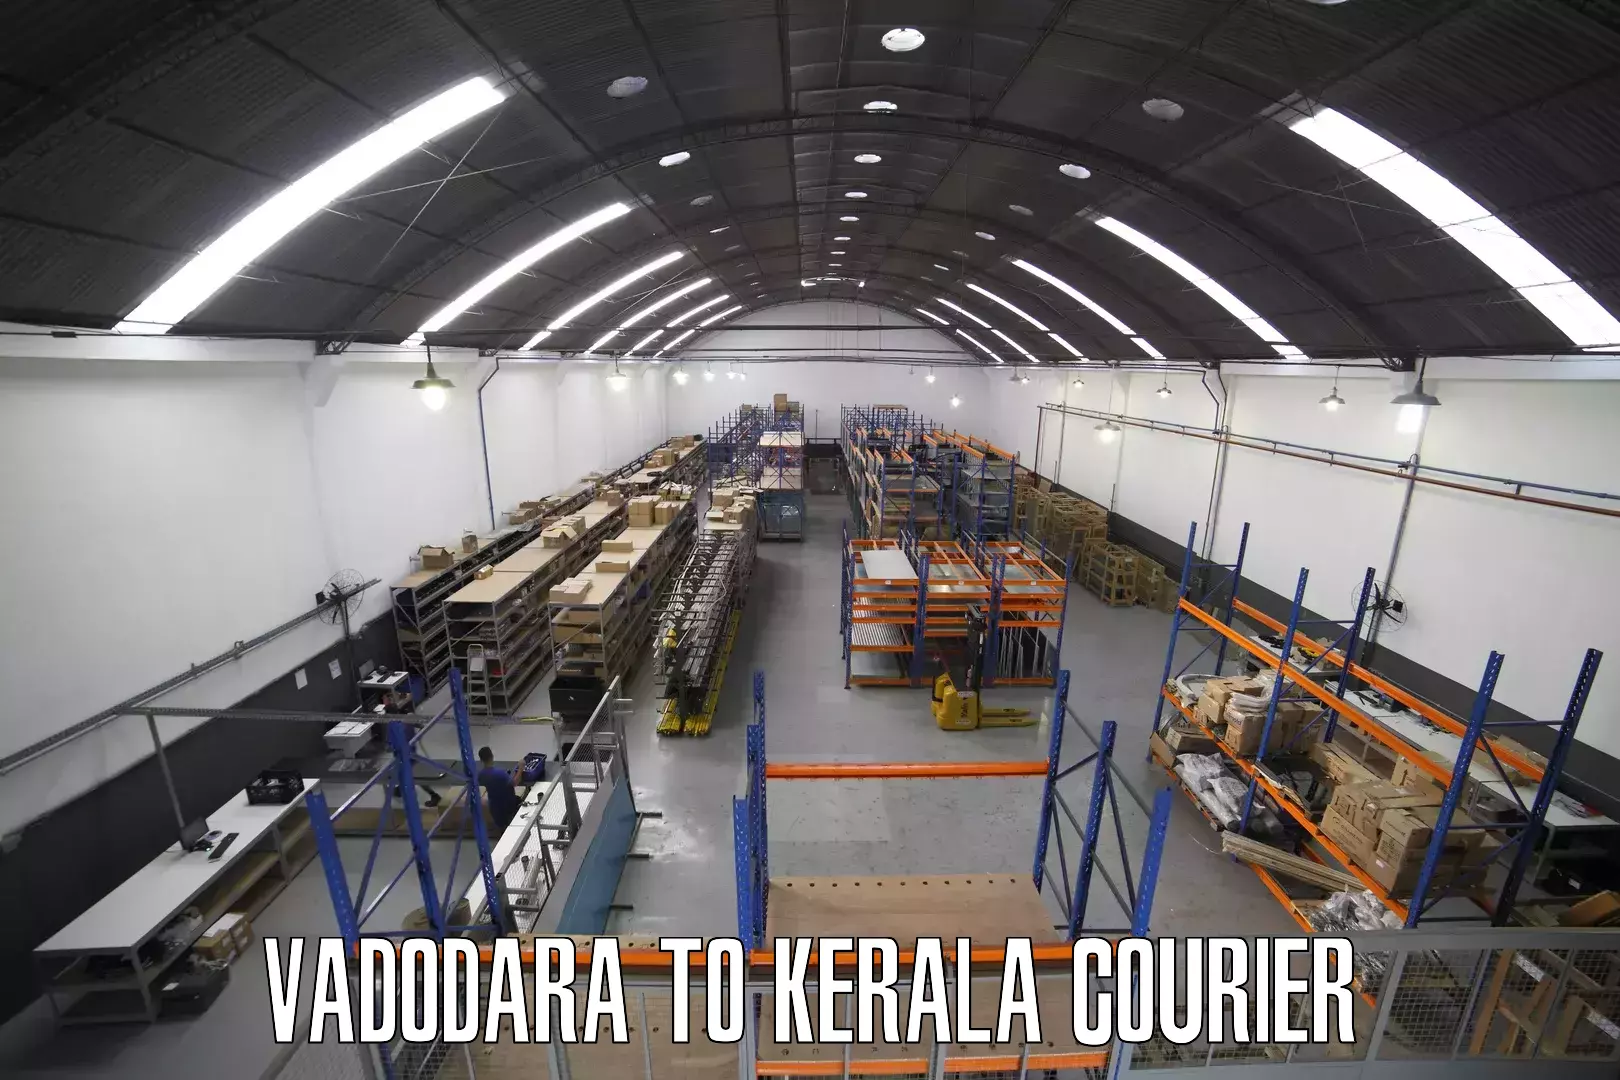 Regular parcel service Vadodara to Kottarakkara